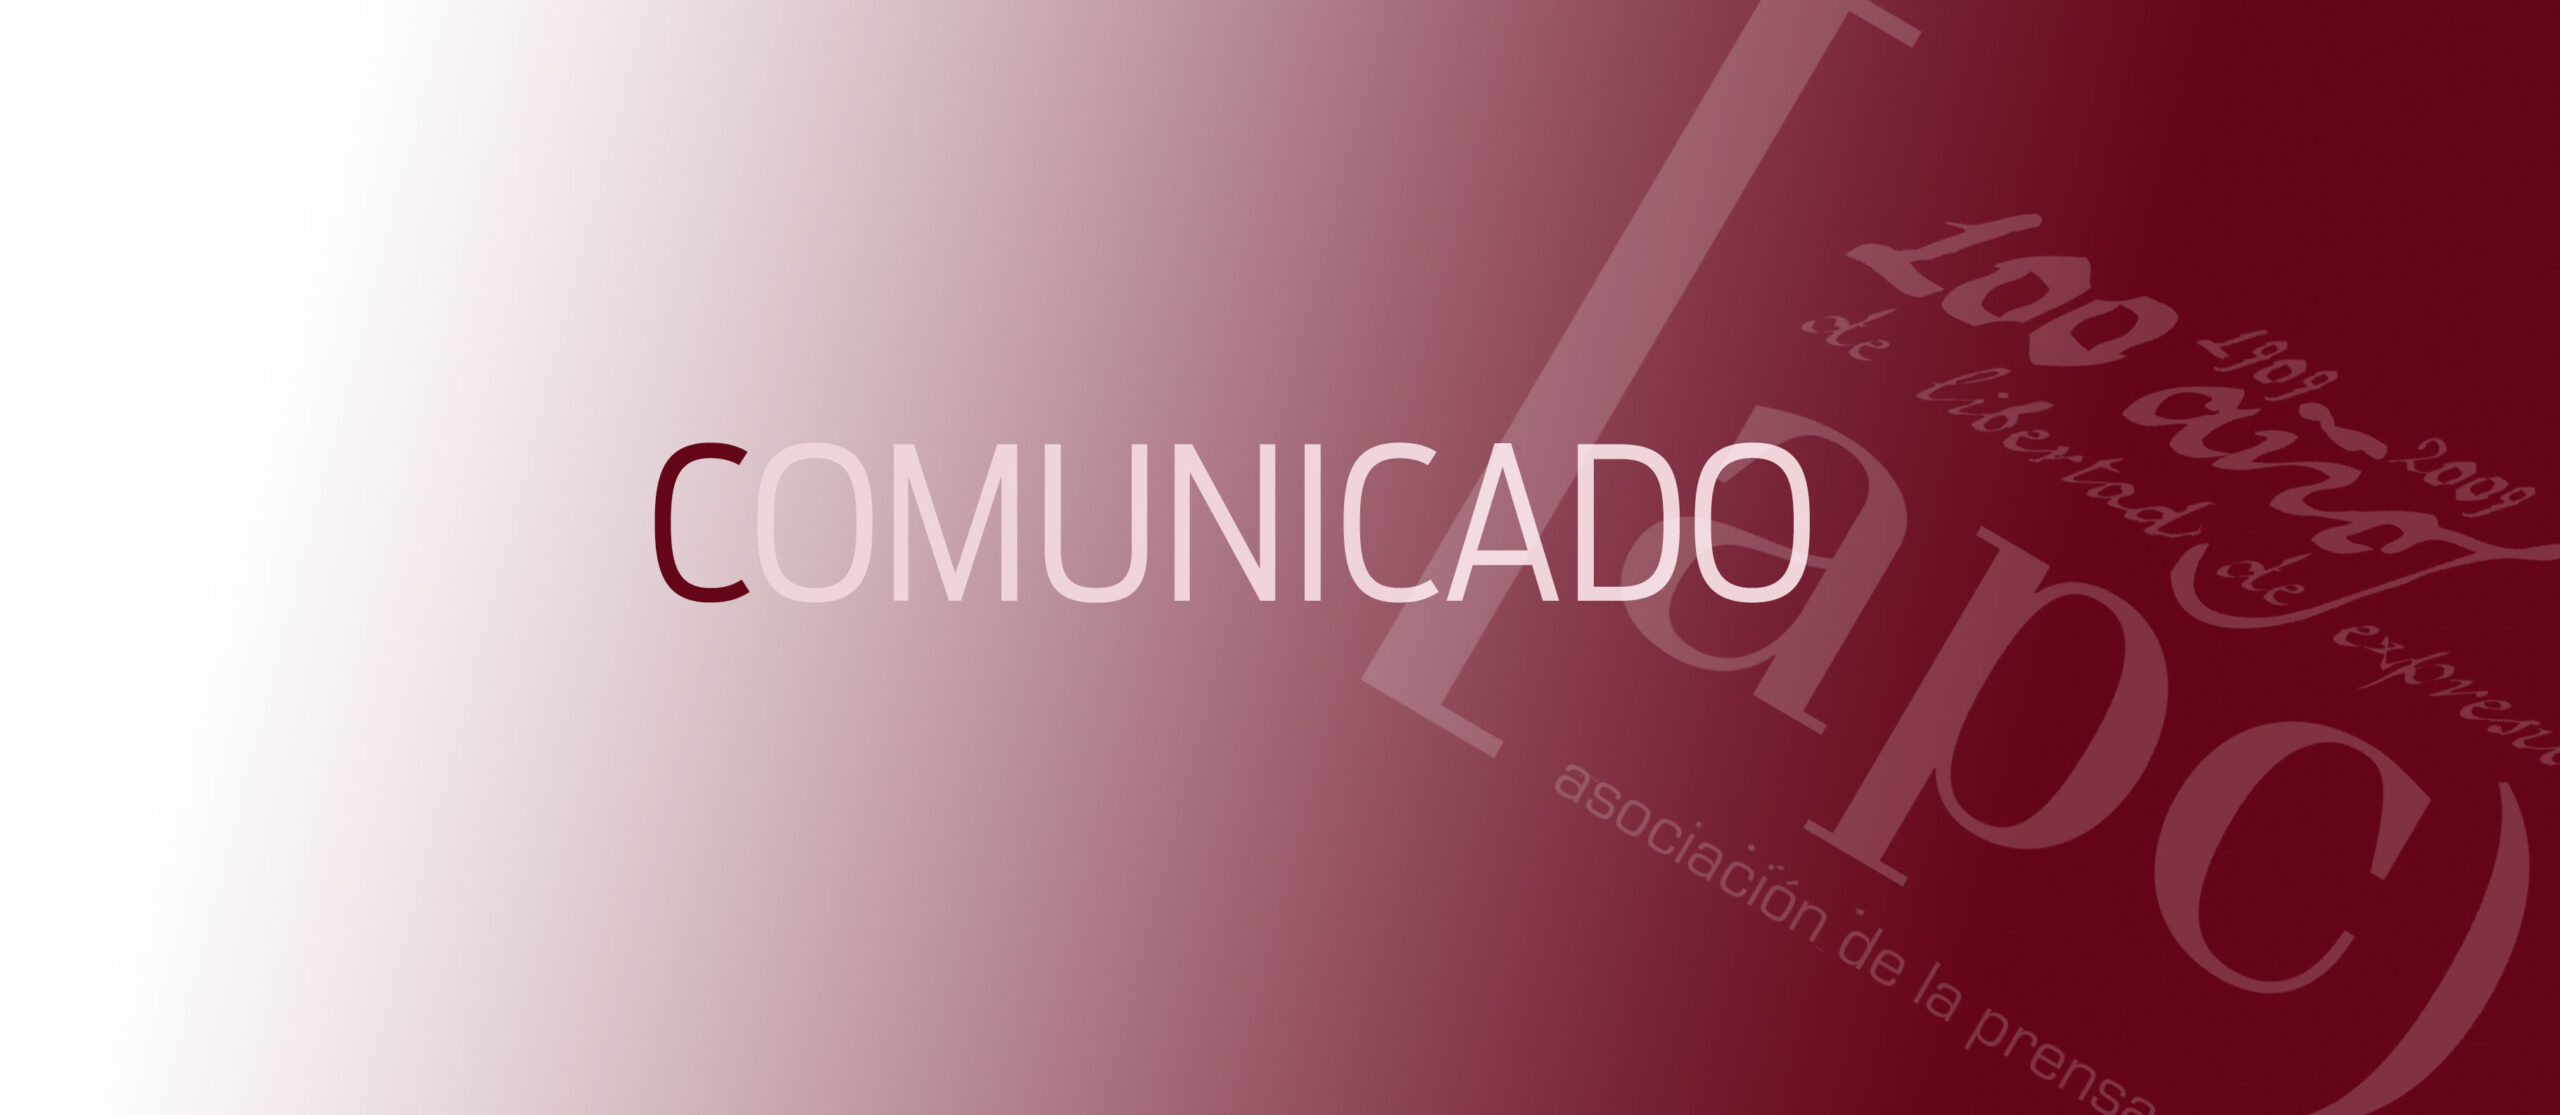 COMUNICADO: La APC se opone a la difusión de contenido discriminatorio